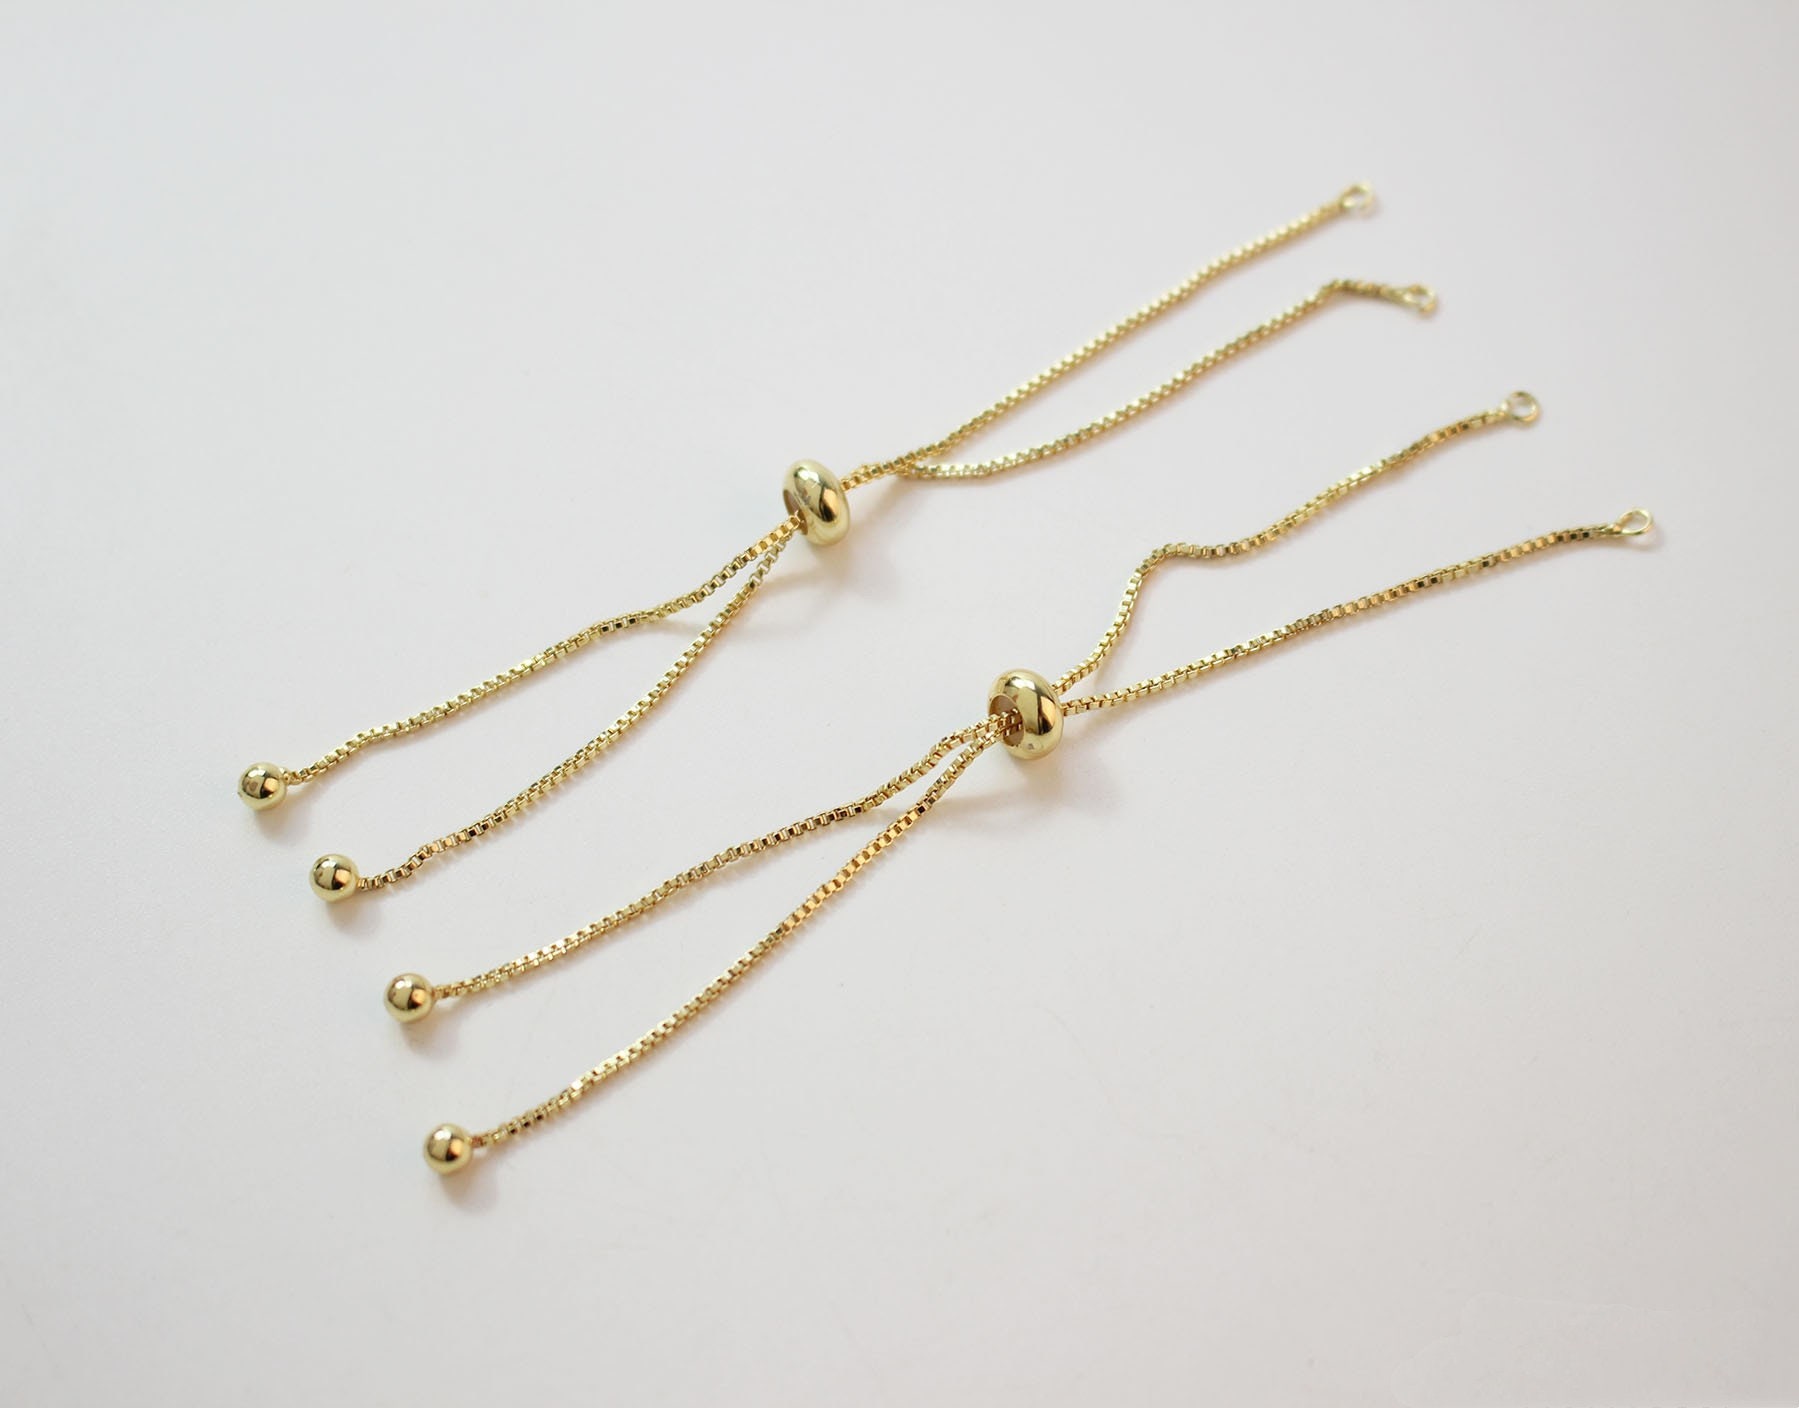 3pcs 18K Gold Plated Brass Adjustable Chain Bracelet GG1649 - Etsy